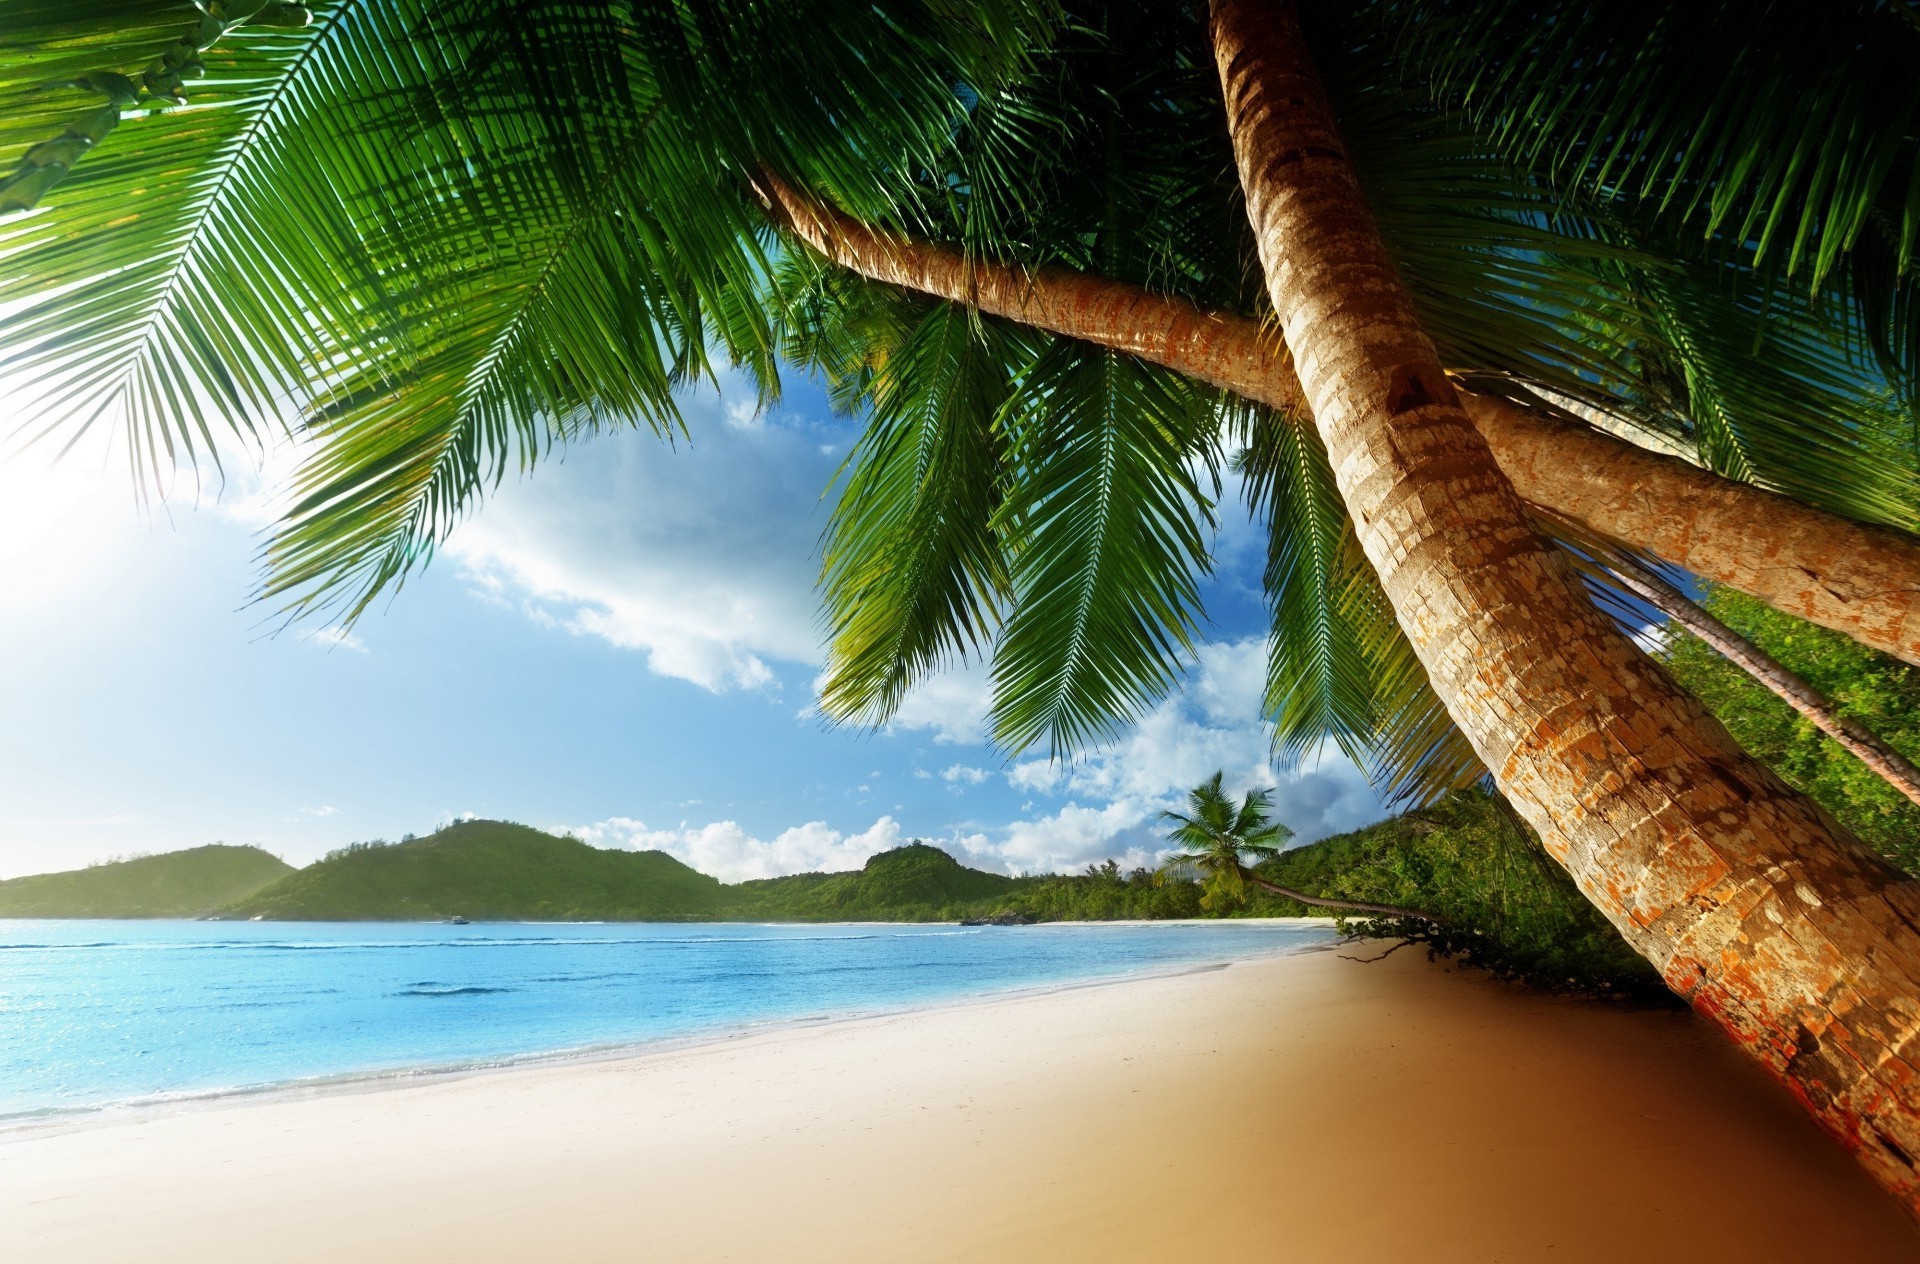 море и океан тропический пляж ладони песок экзотические рай моря остров кокосовое лето океан путешествия курорт отпуск воды идиллия природа дерево релаксация